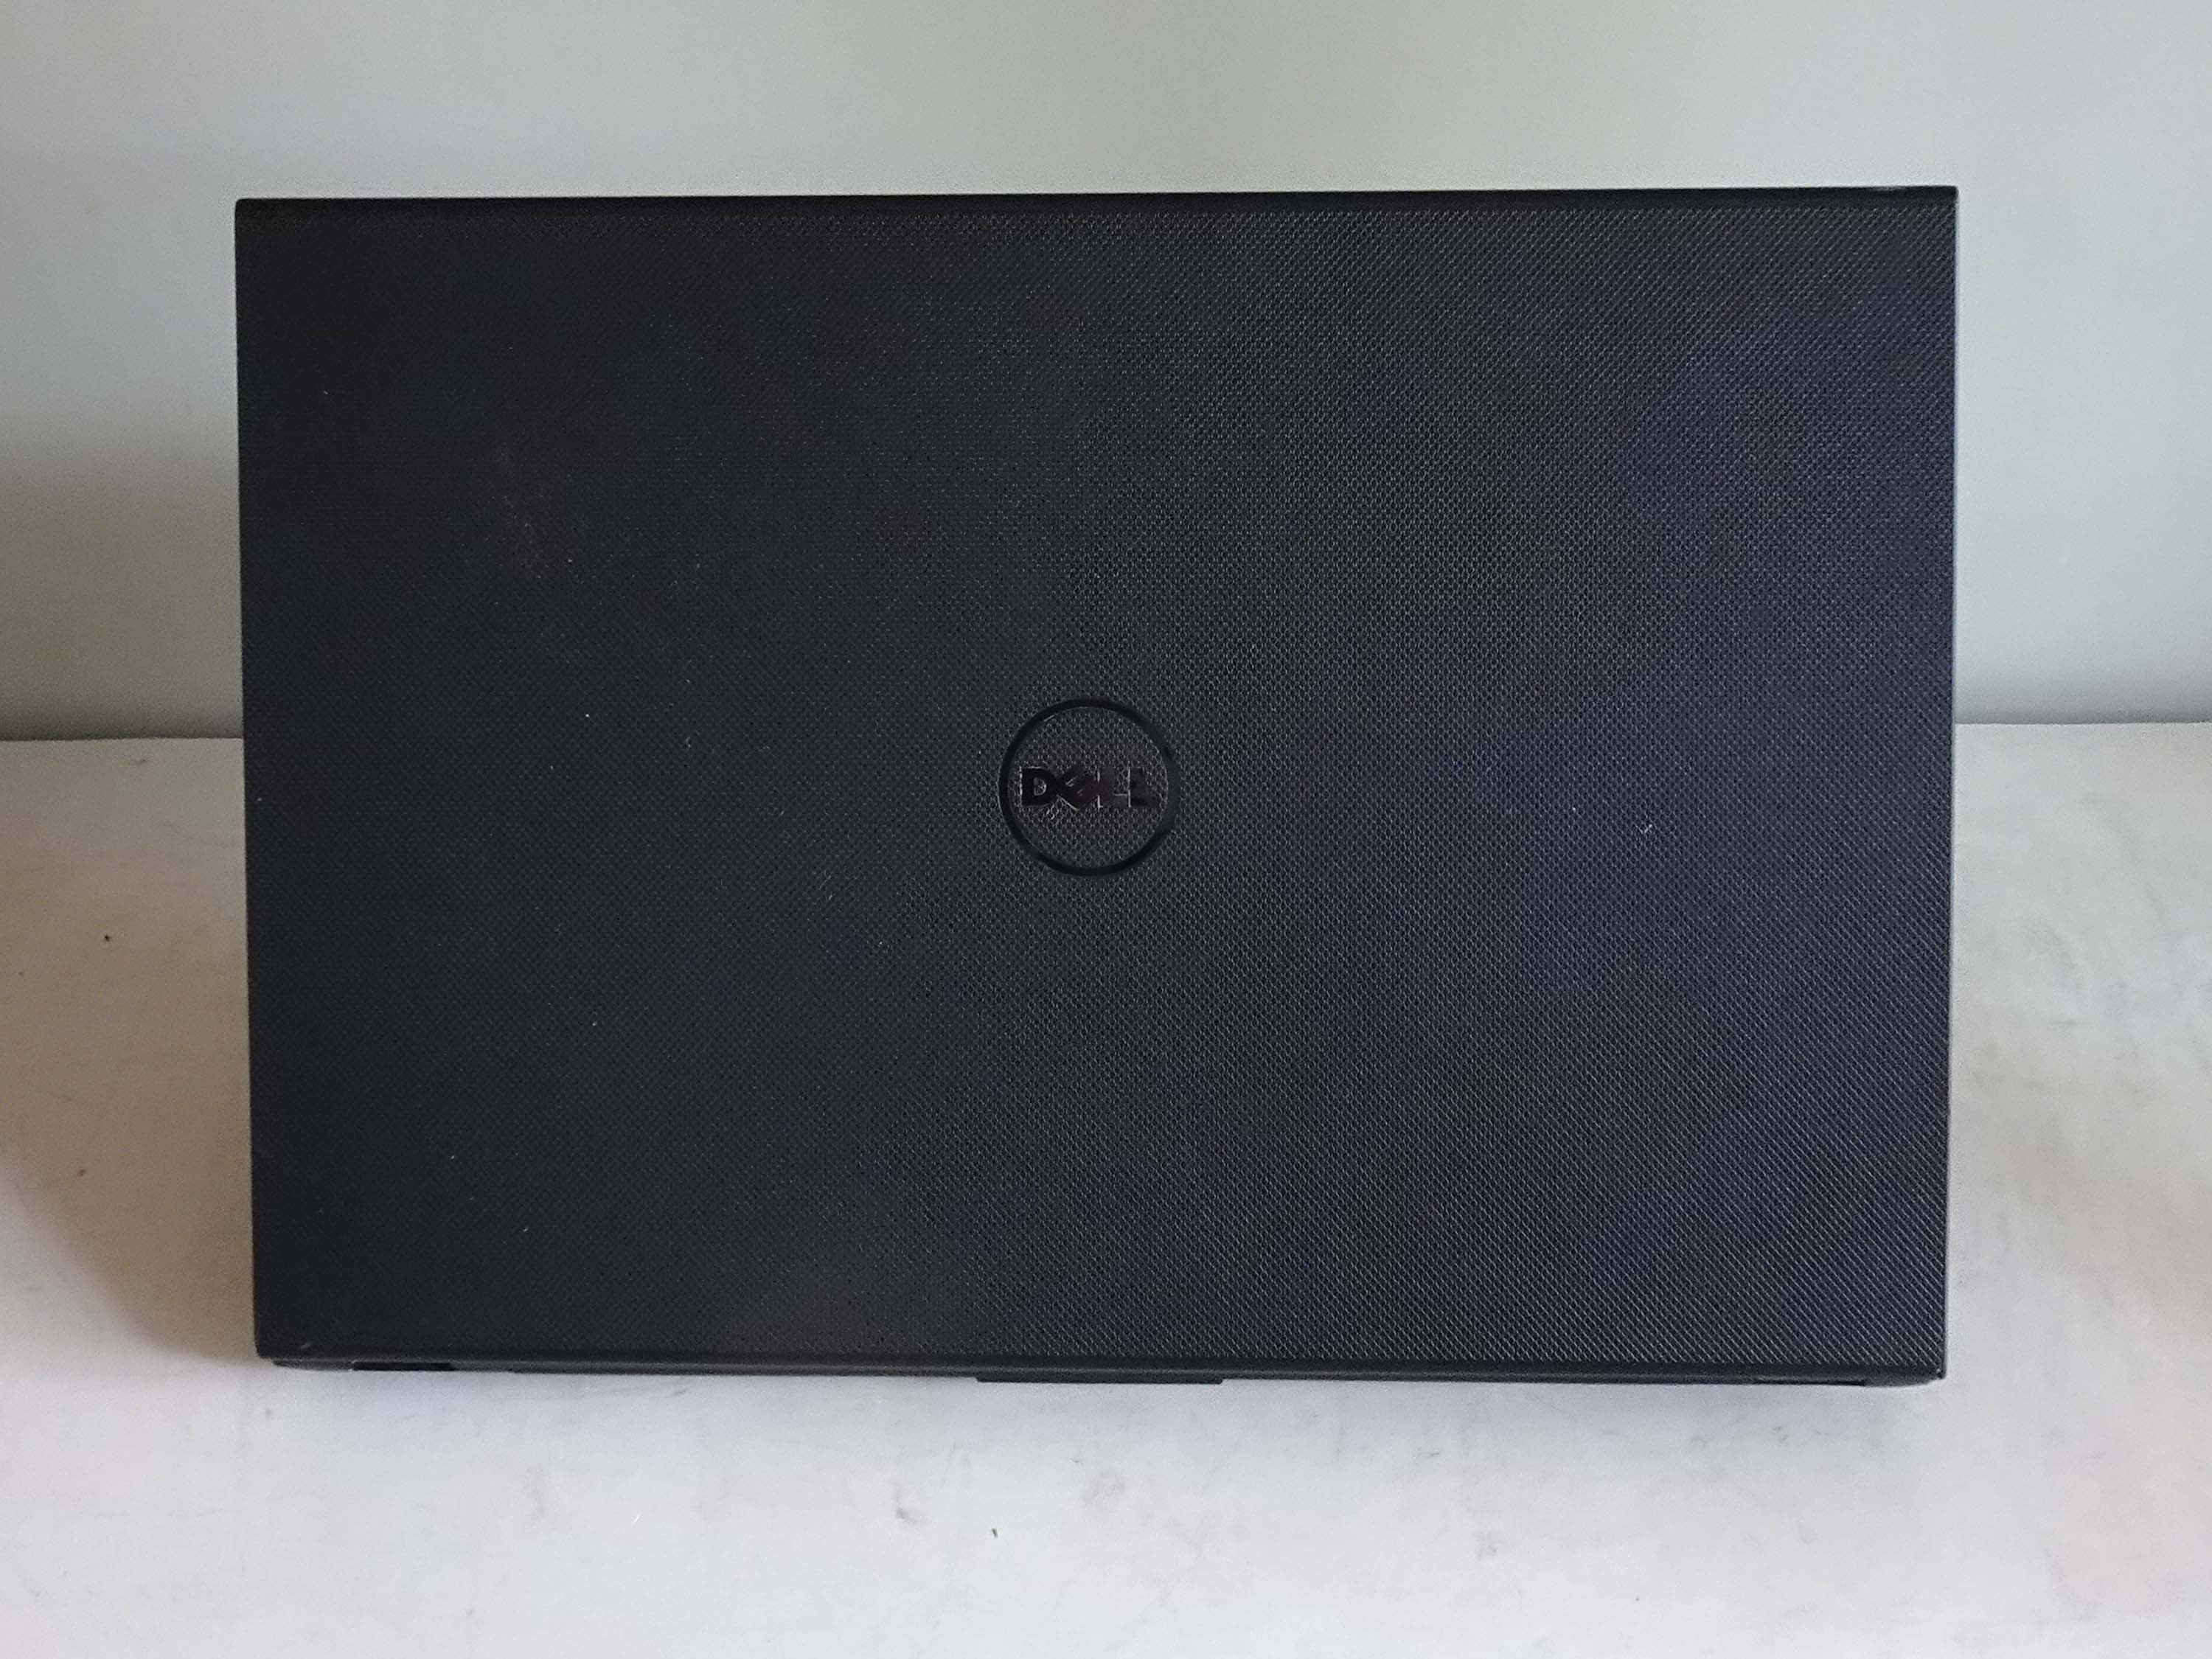 Laptop Dell Inspiron 3542 cũ chính hãng giá rẻ tại Tp Kun Tum